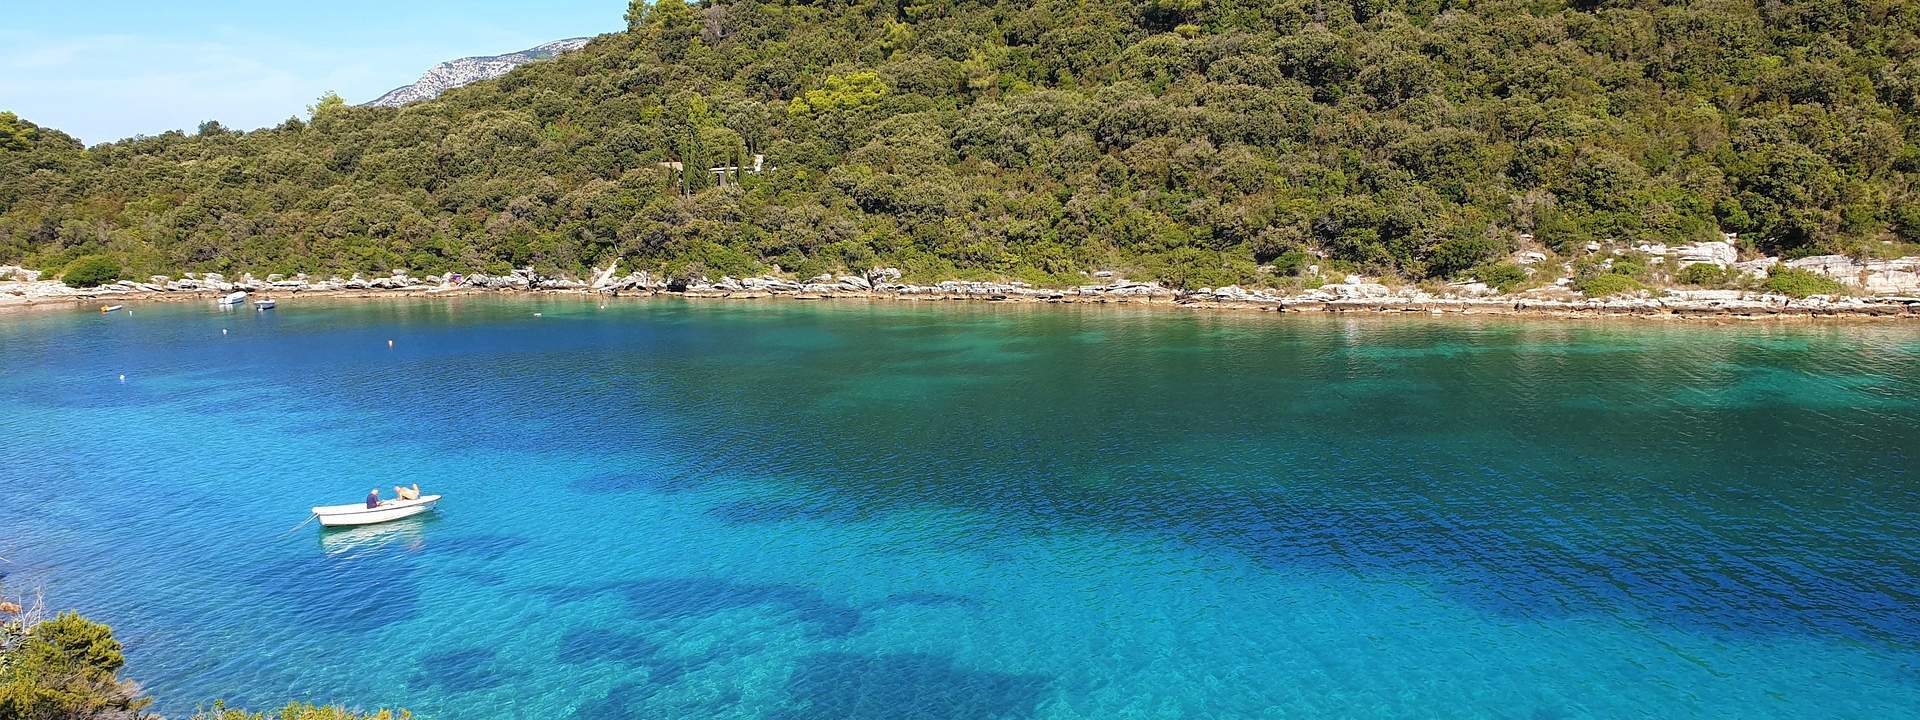 Pronto a scoprire le più belle isole della Dalmazia?